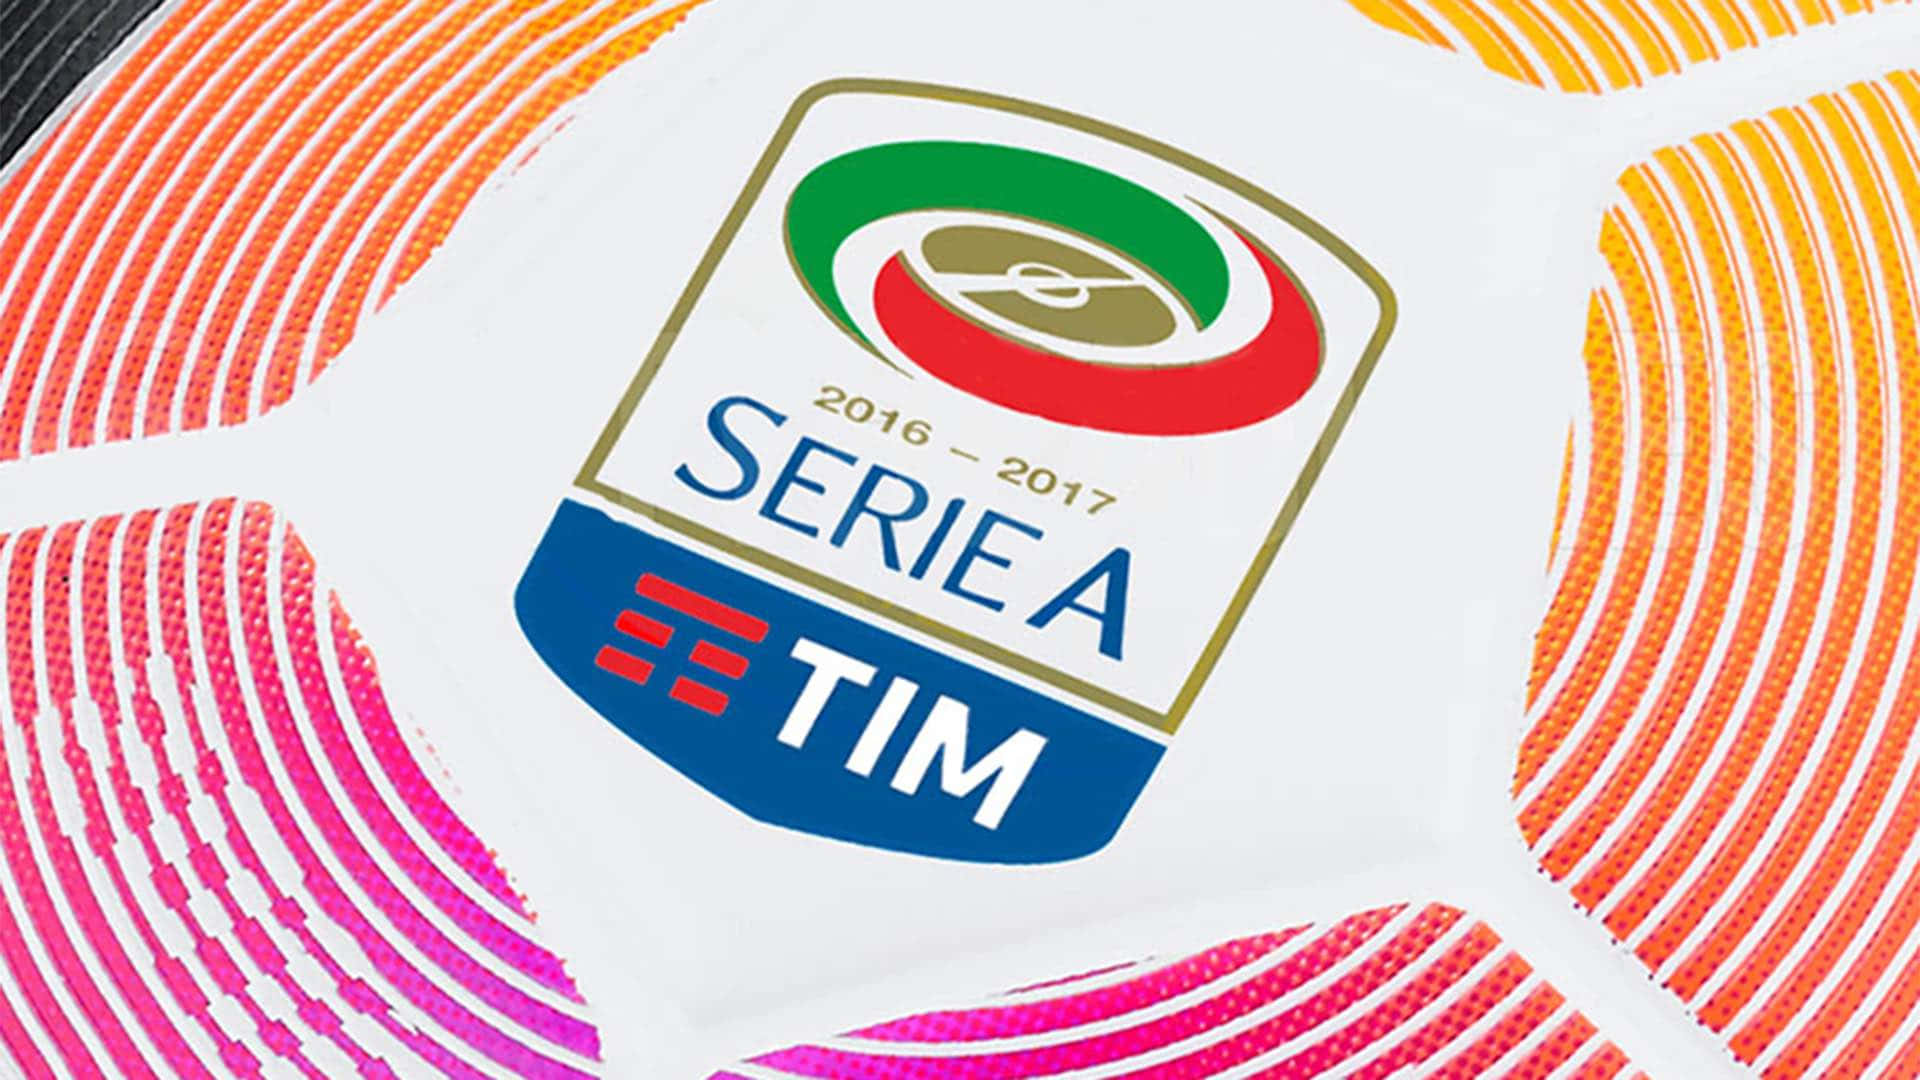 Serie A Wallpaper